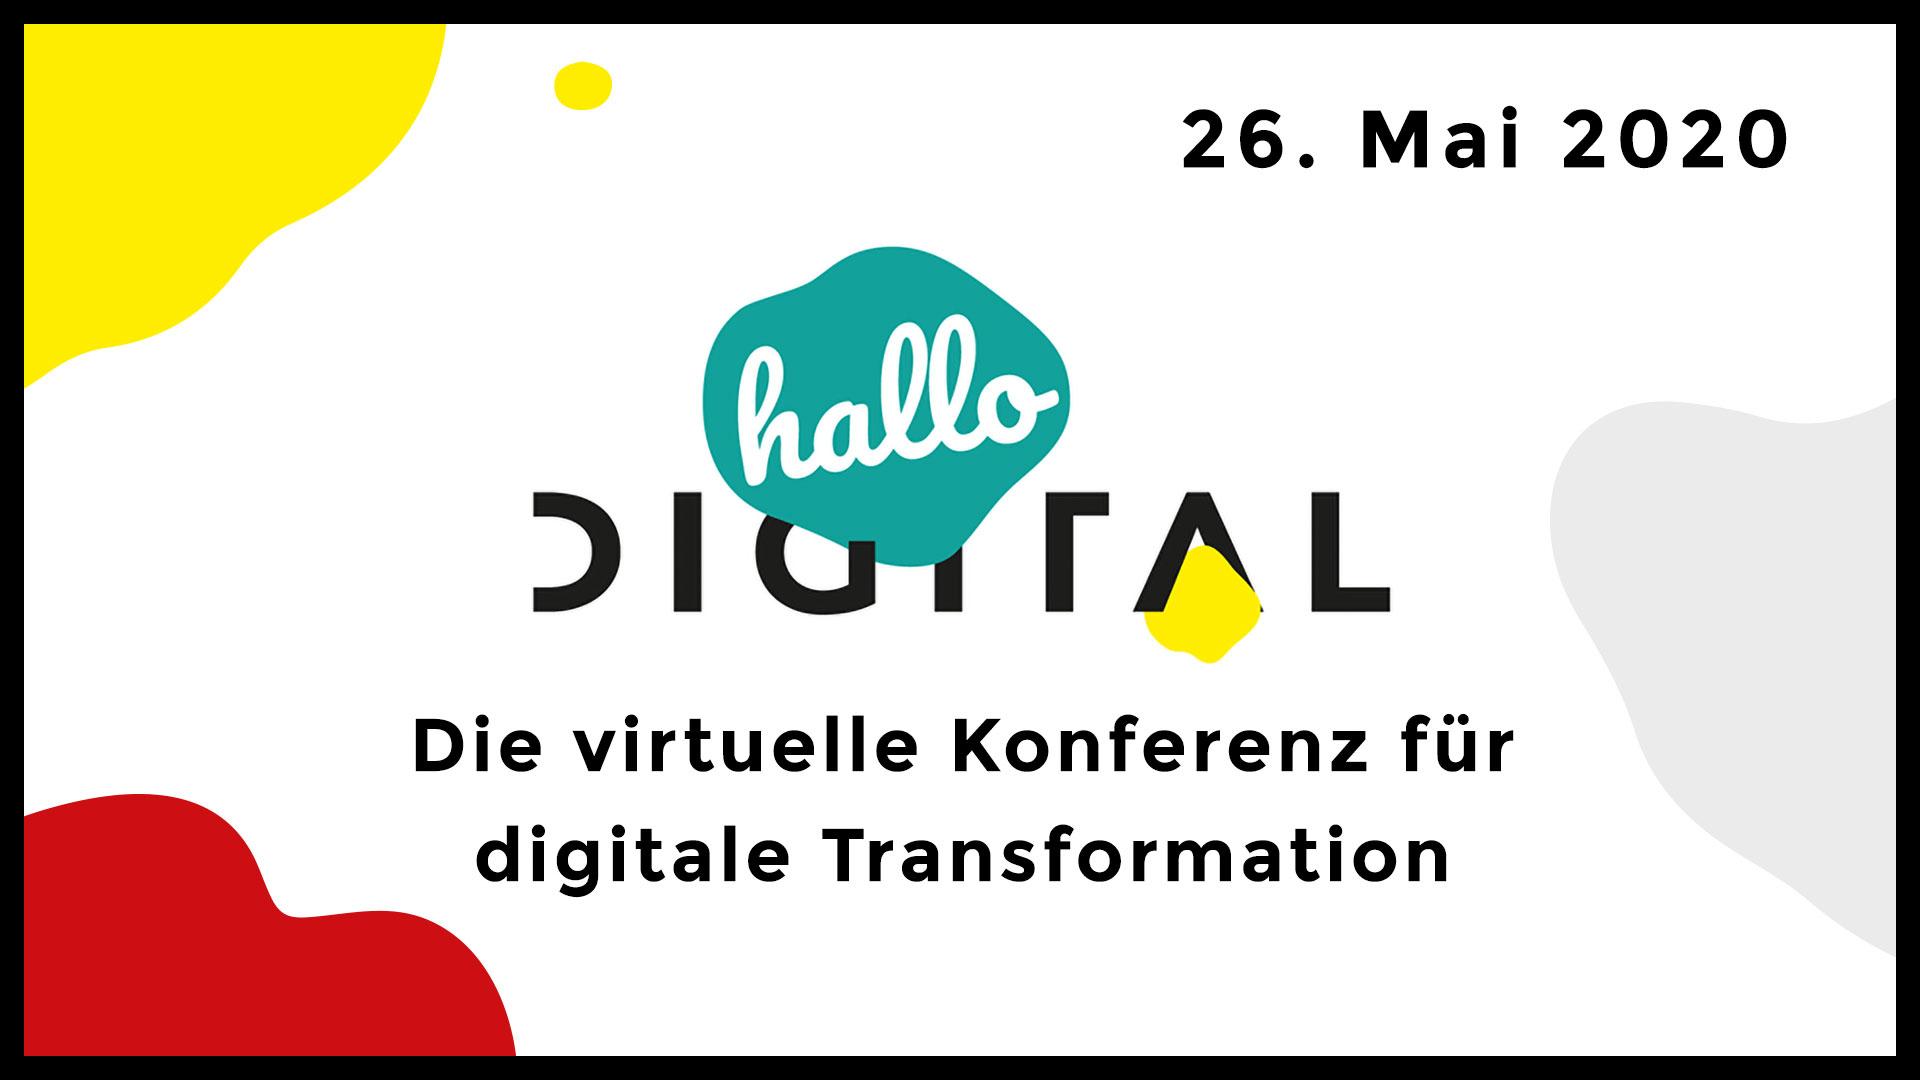 hallo.digital – Die virtuelle Konferenz für digitale Transformation am 26. Mai